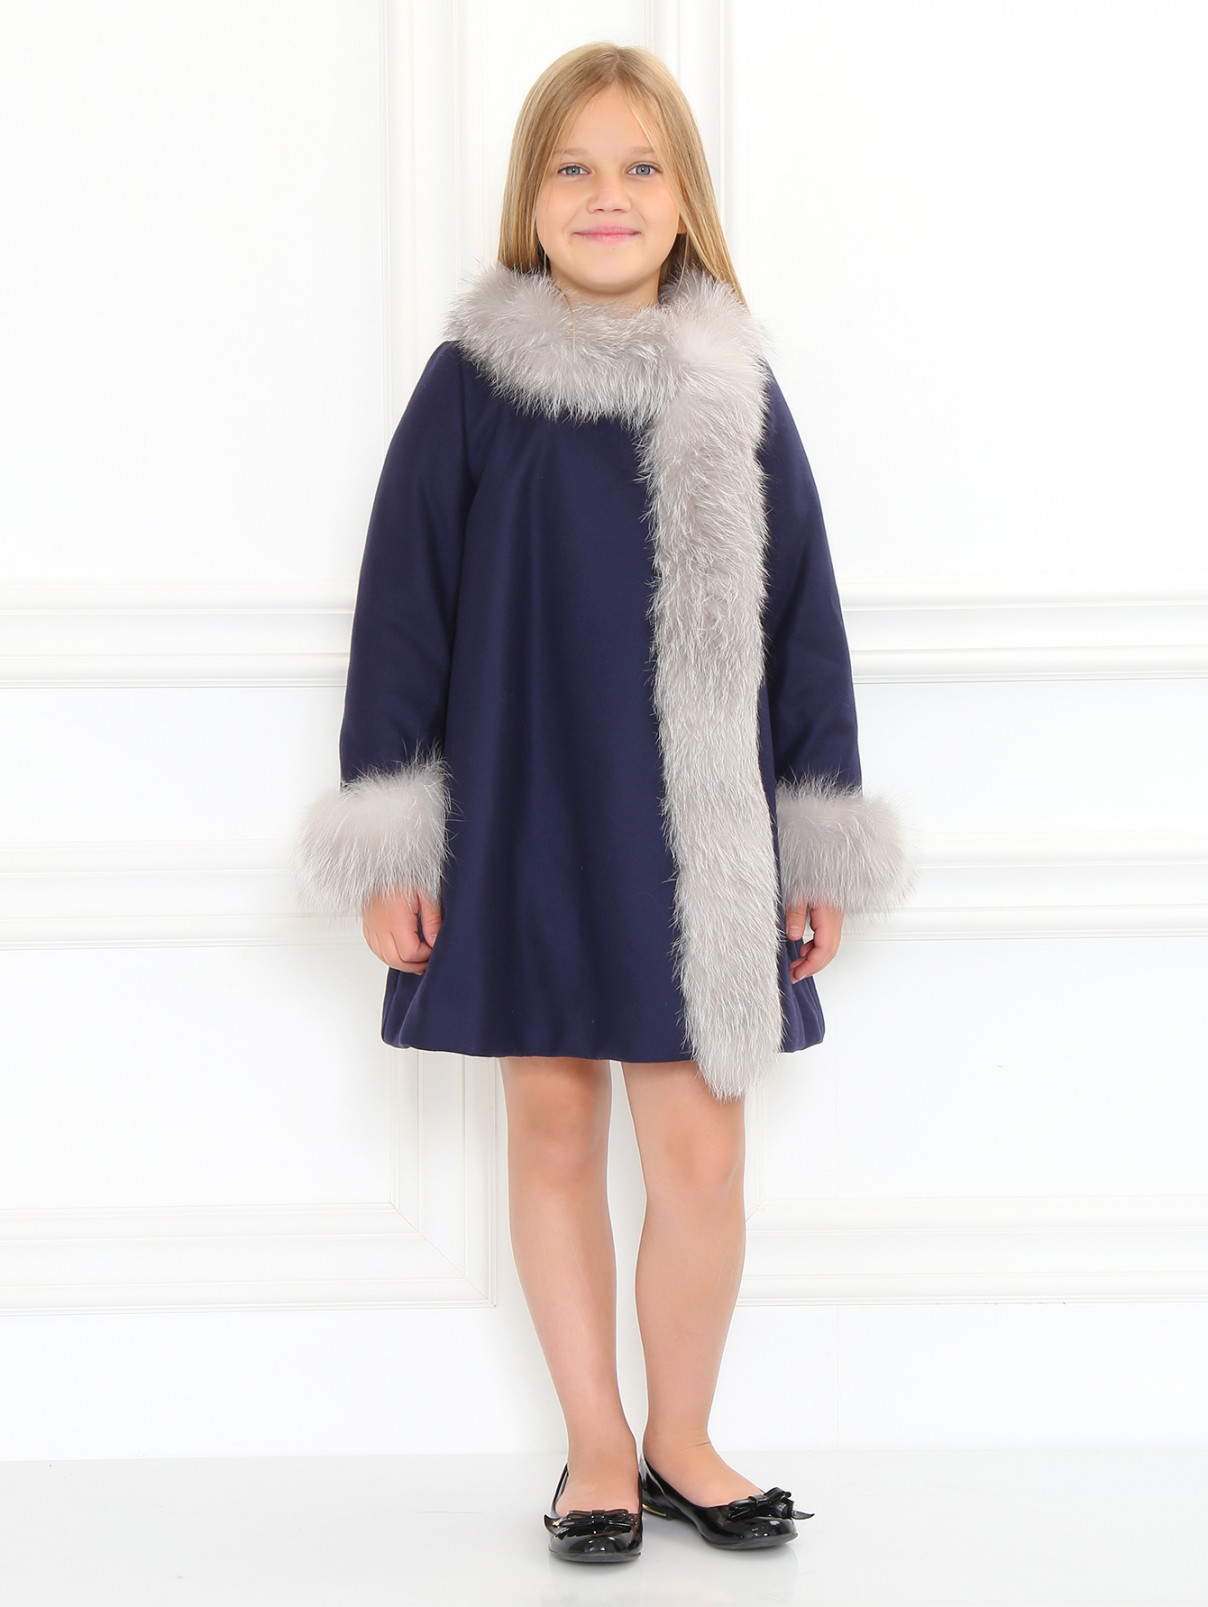 Пальто из шерсти с отделкой из меха лисы Baby Dior  –  Модель Общий вид  – Цвет:  Синий